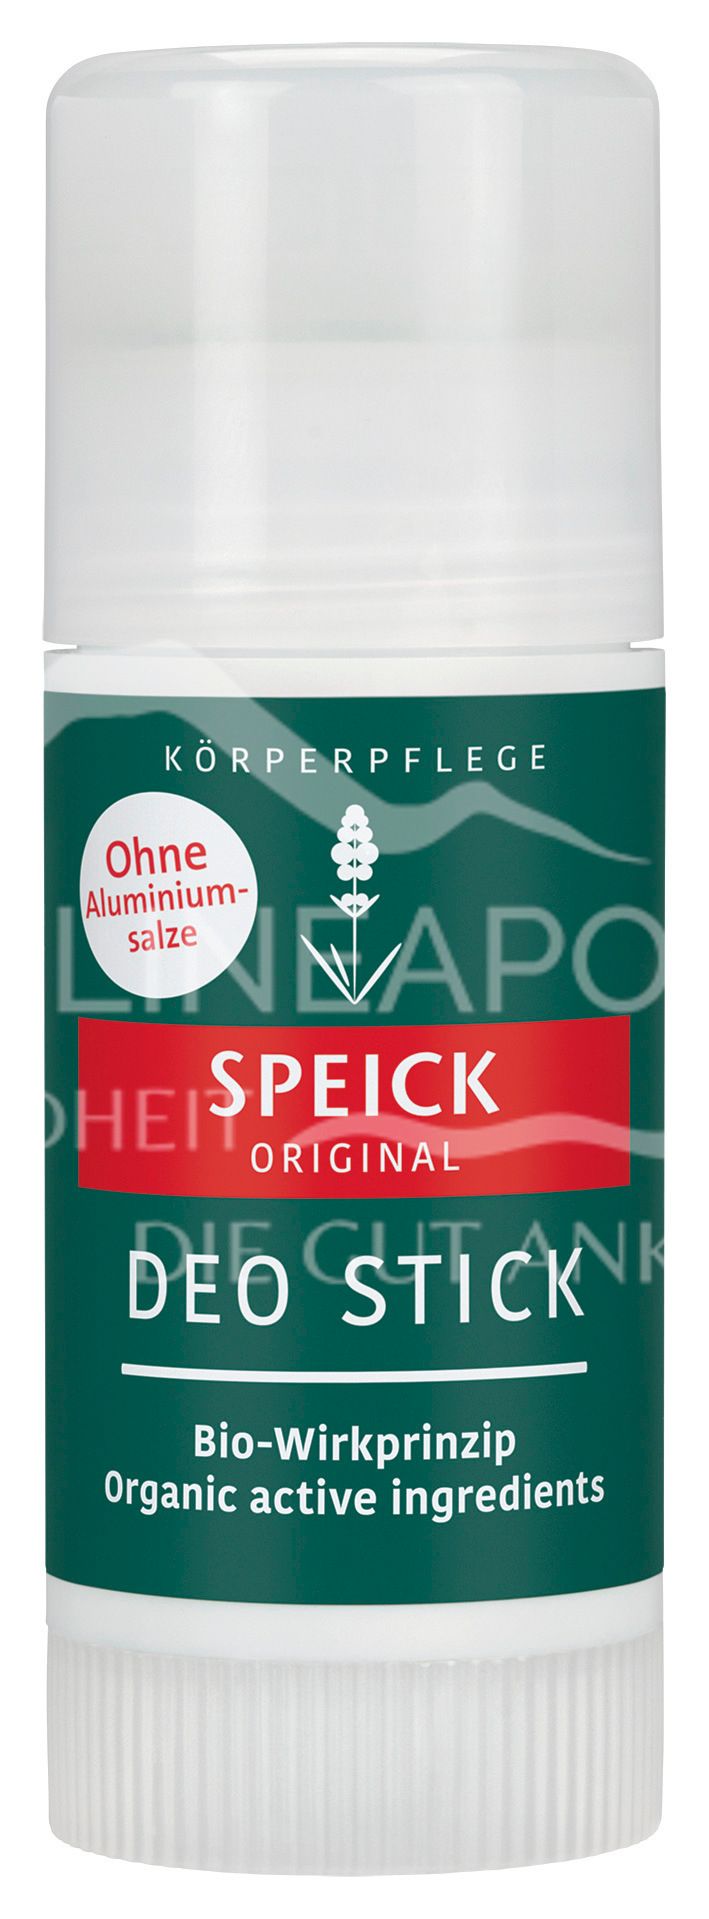 Speick Original Deo Stick